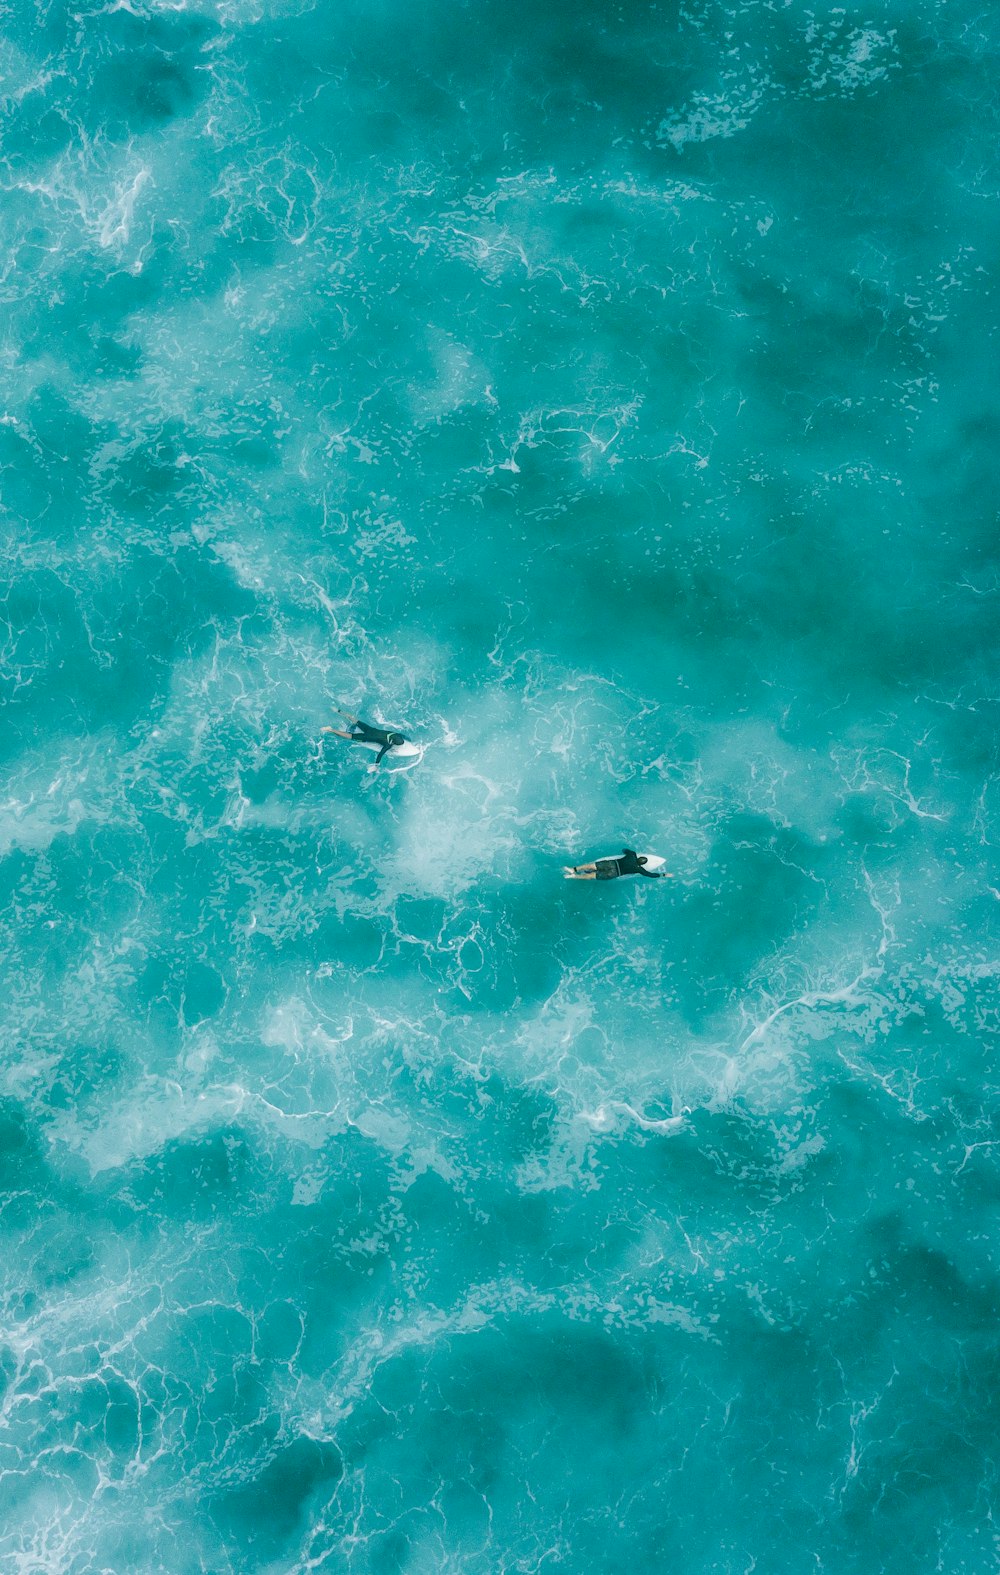 zwei Personen surfen auf dem Wasser